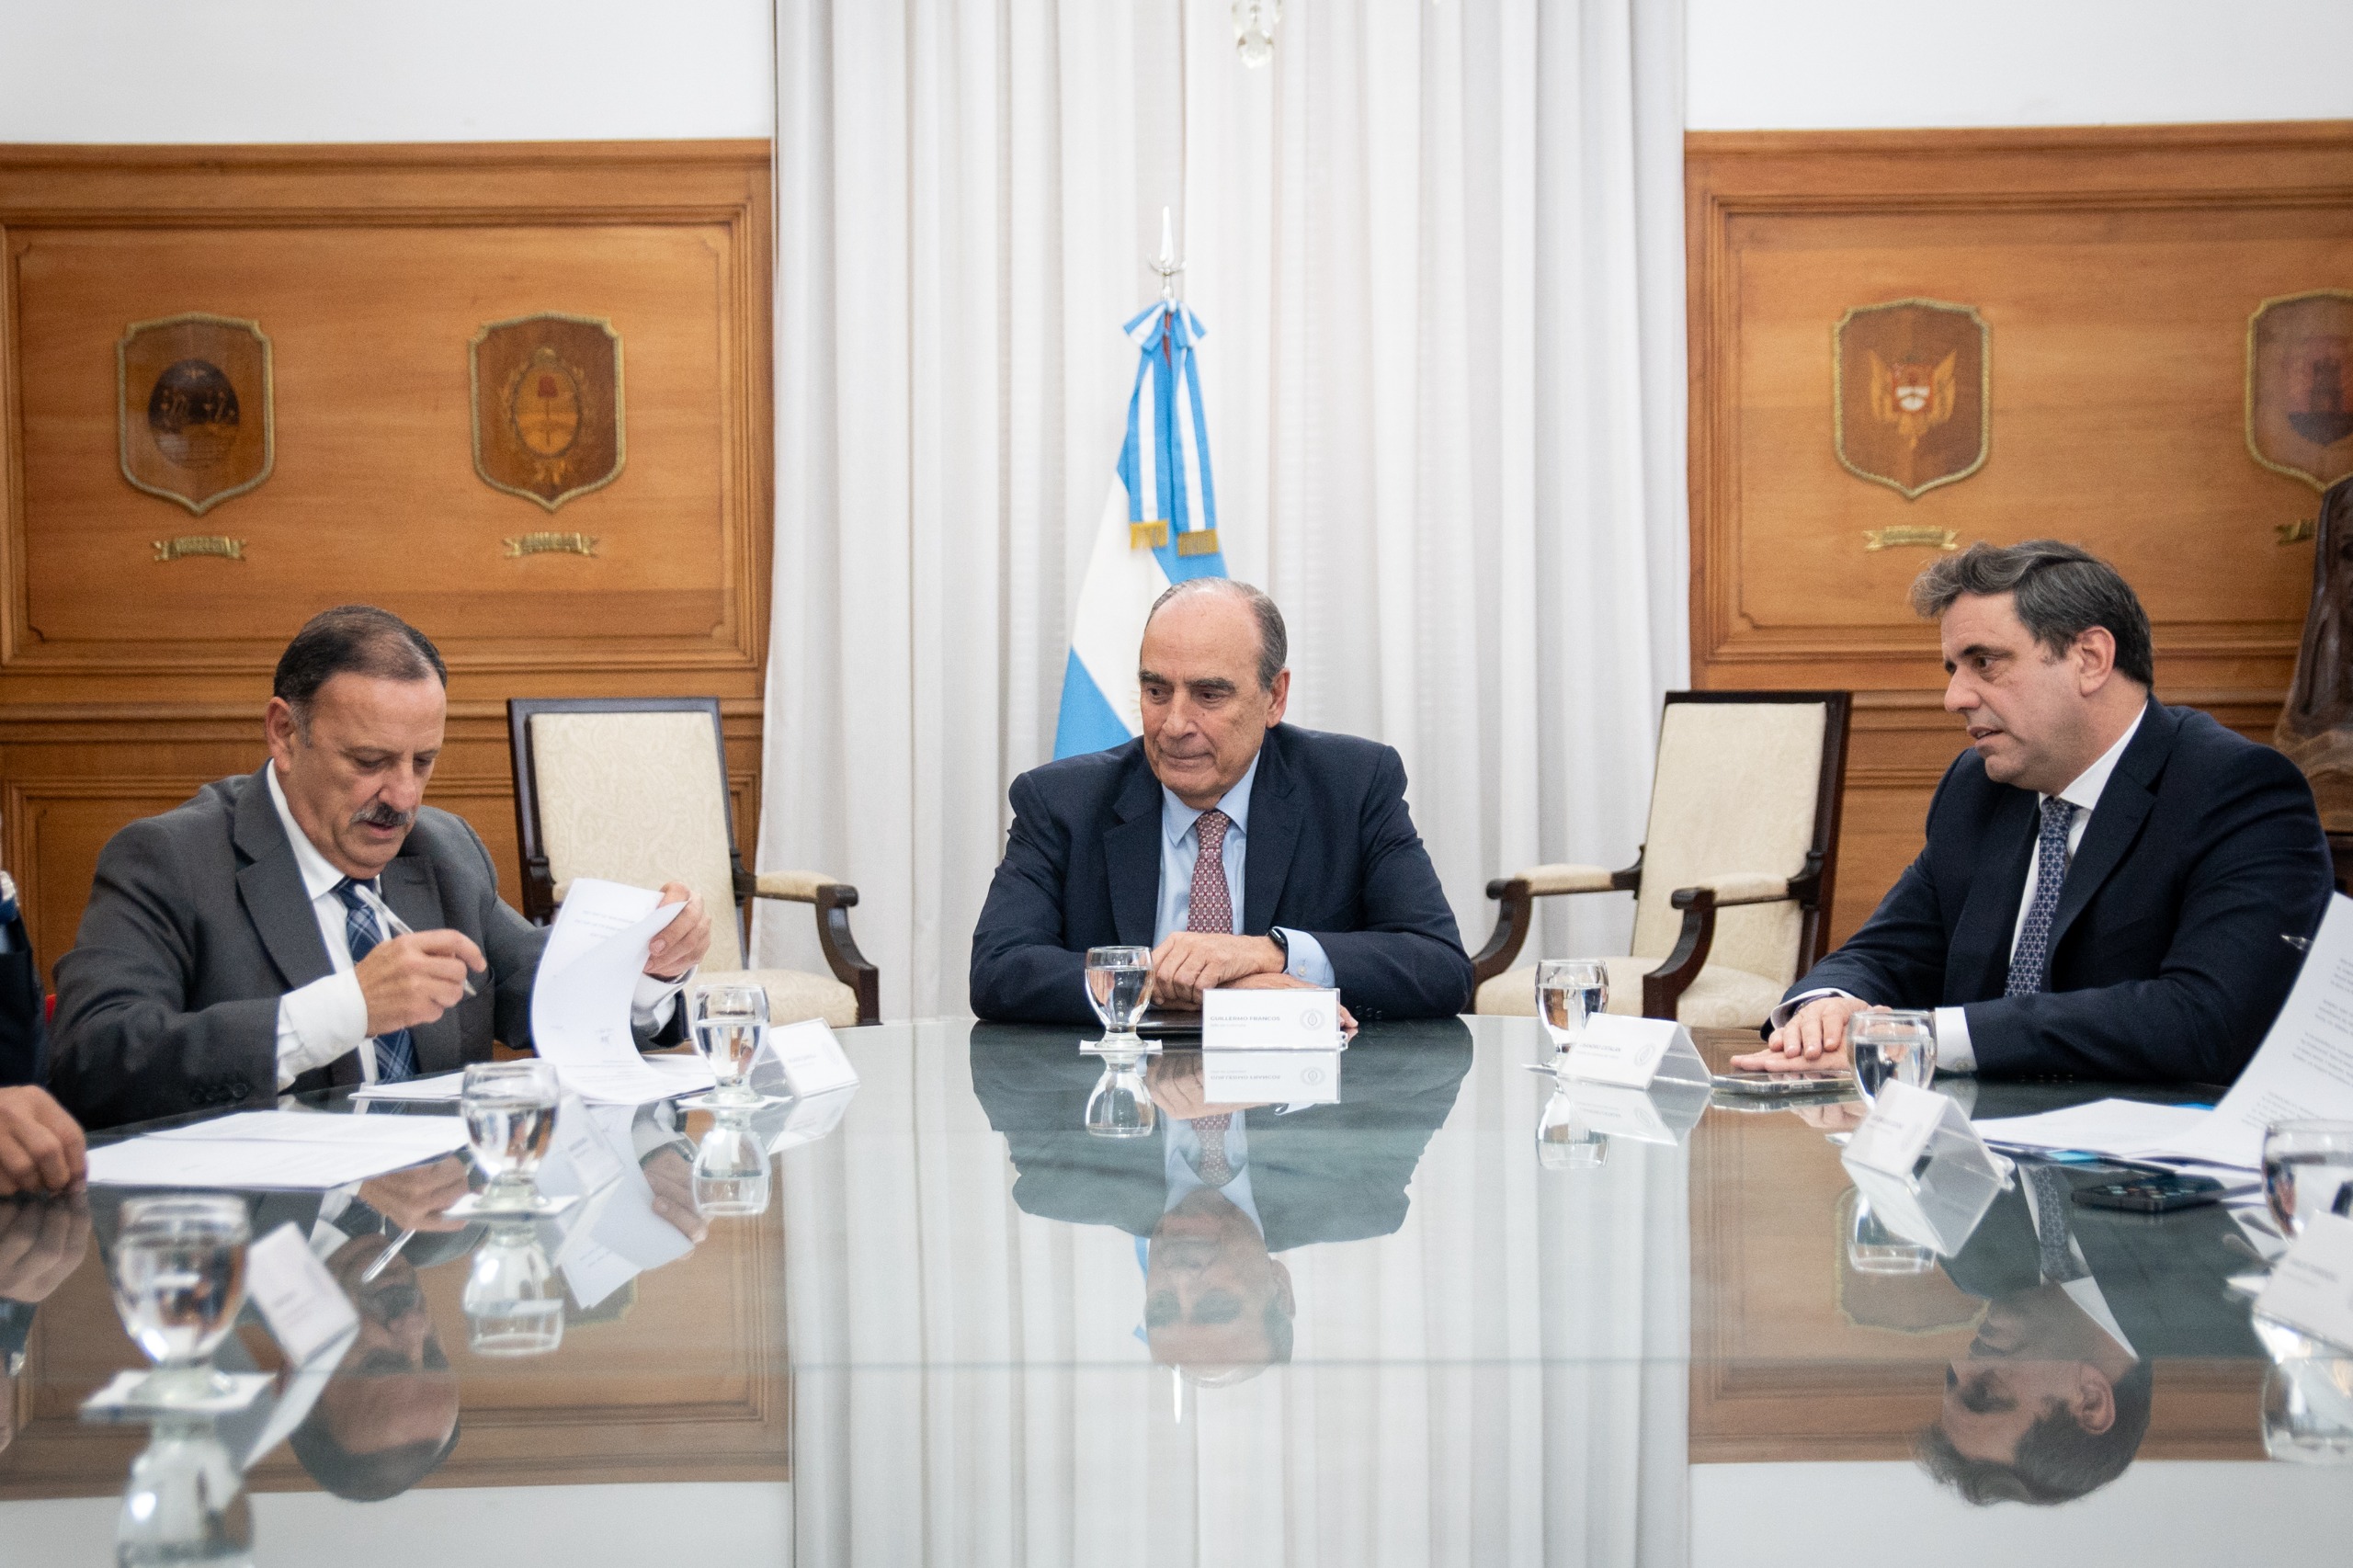 El gobernador Ricardo Quintela firmó un convenio con la Nación para reactivar la obra pública en La Rioja.